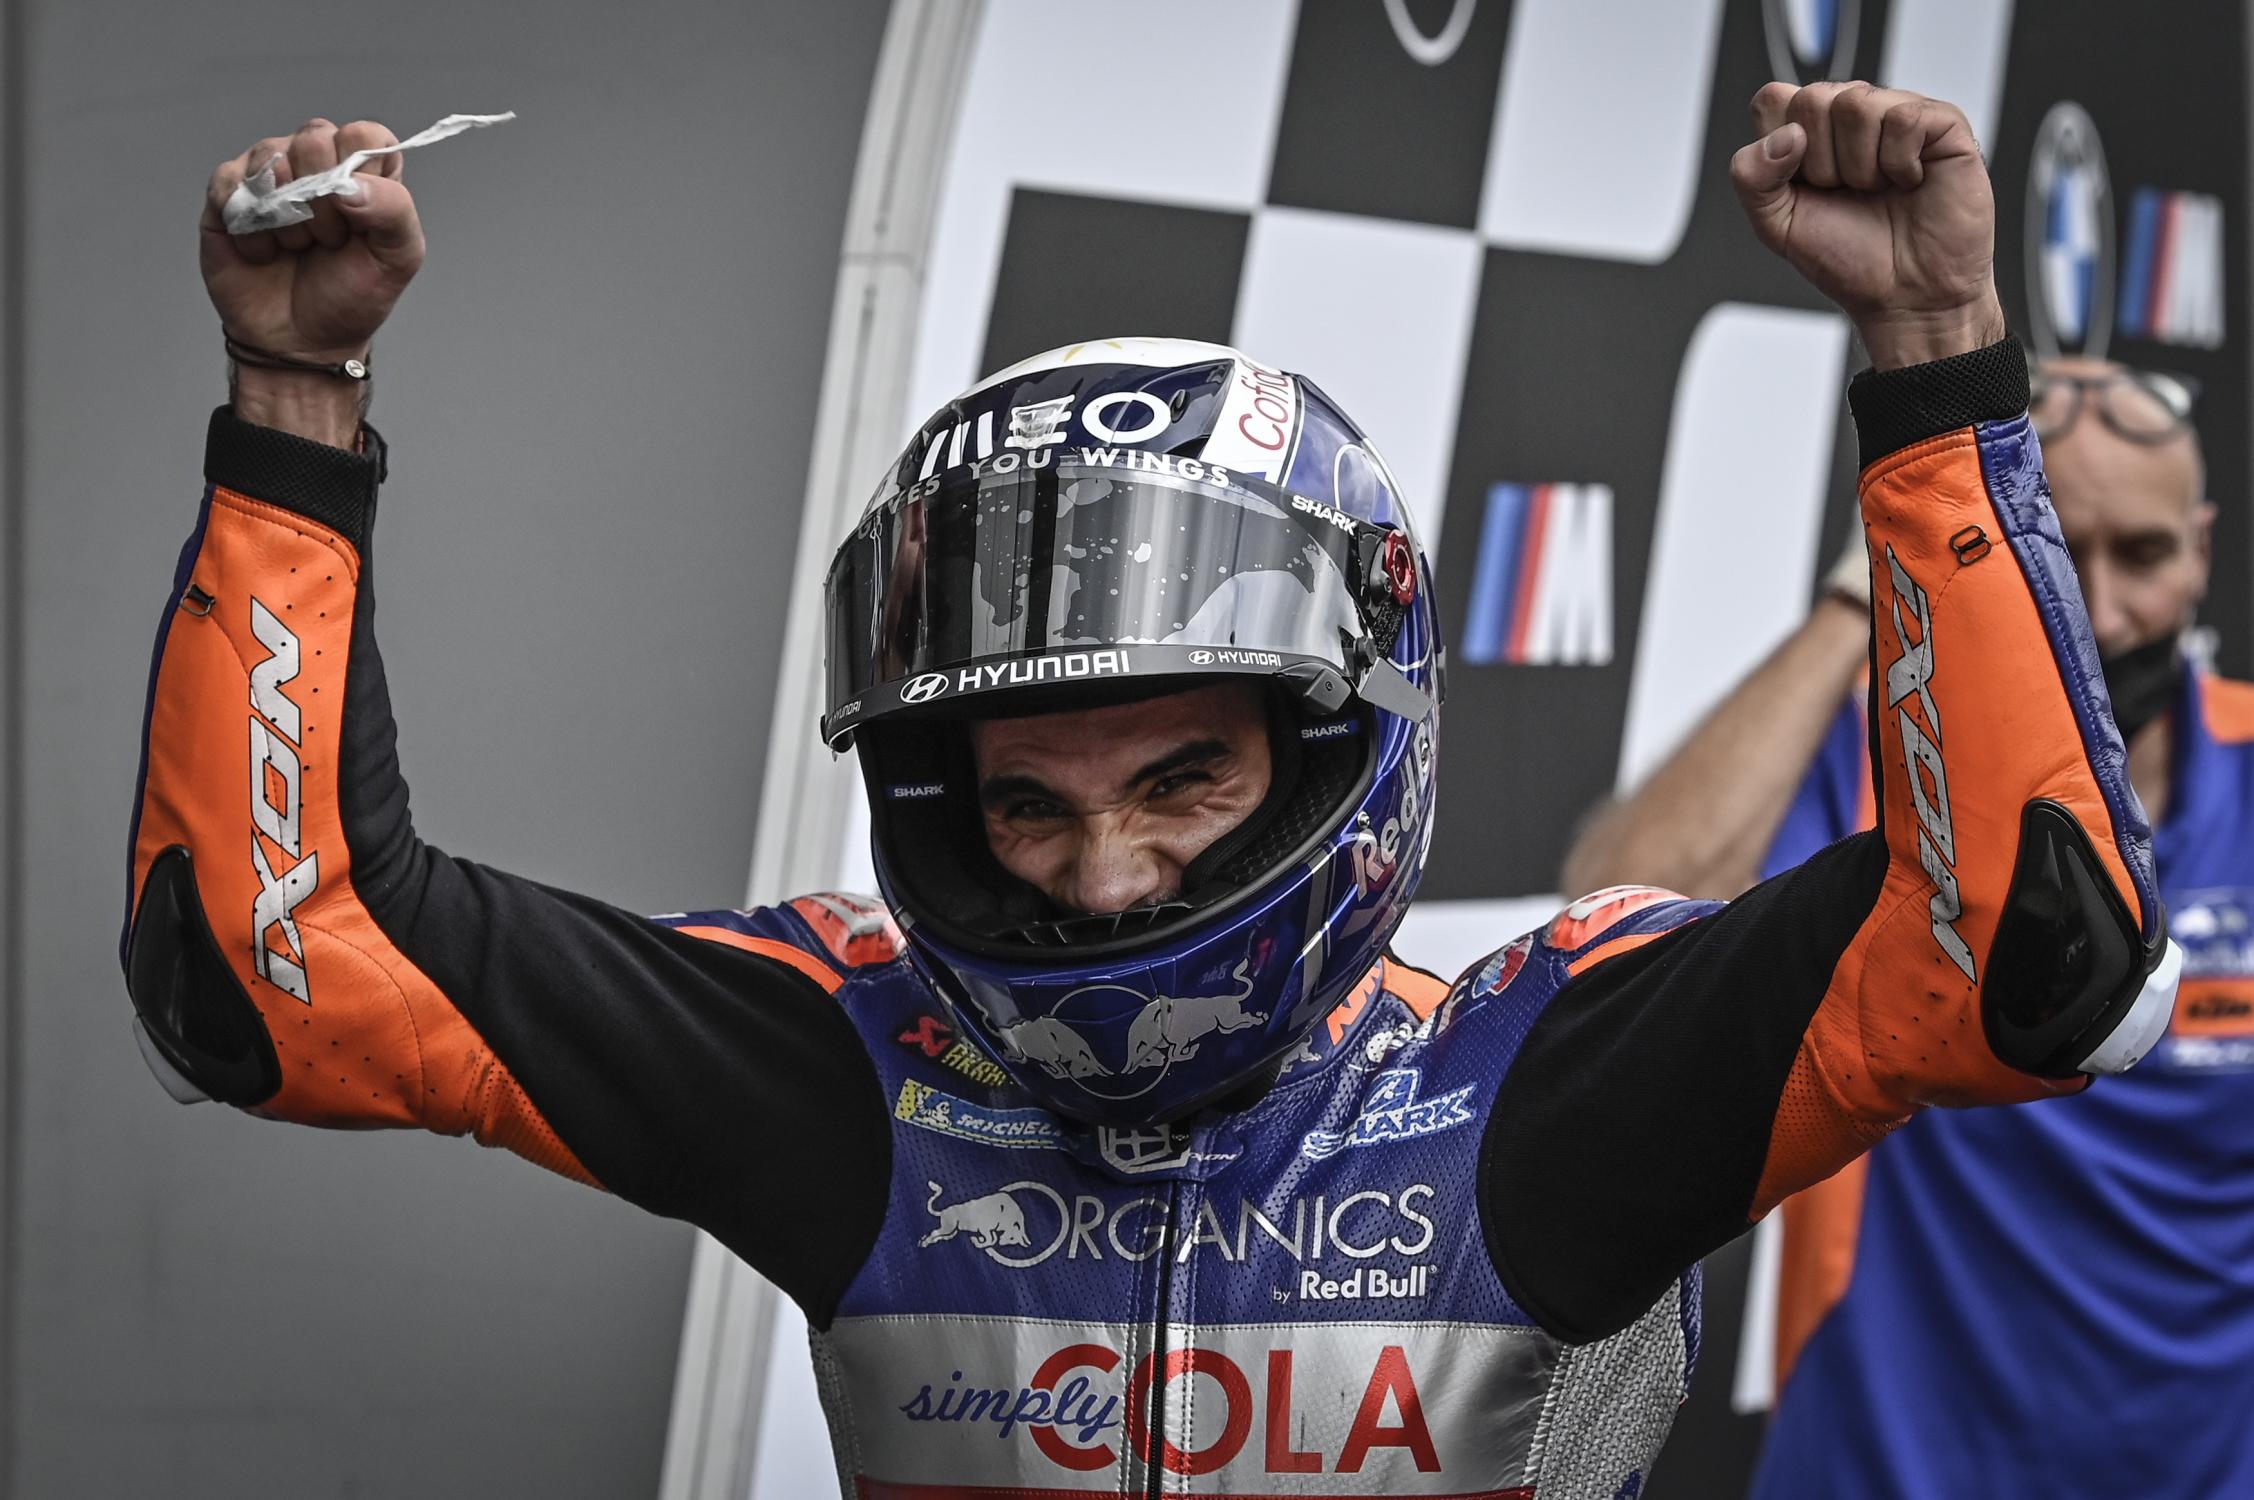 Miguel Oliveira, Tech 3 e Portugal vence corrida imprevisível na Styria e conquistam primeira vitória na MotoGP da história